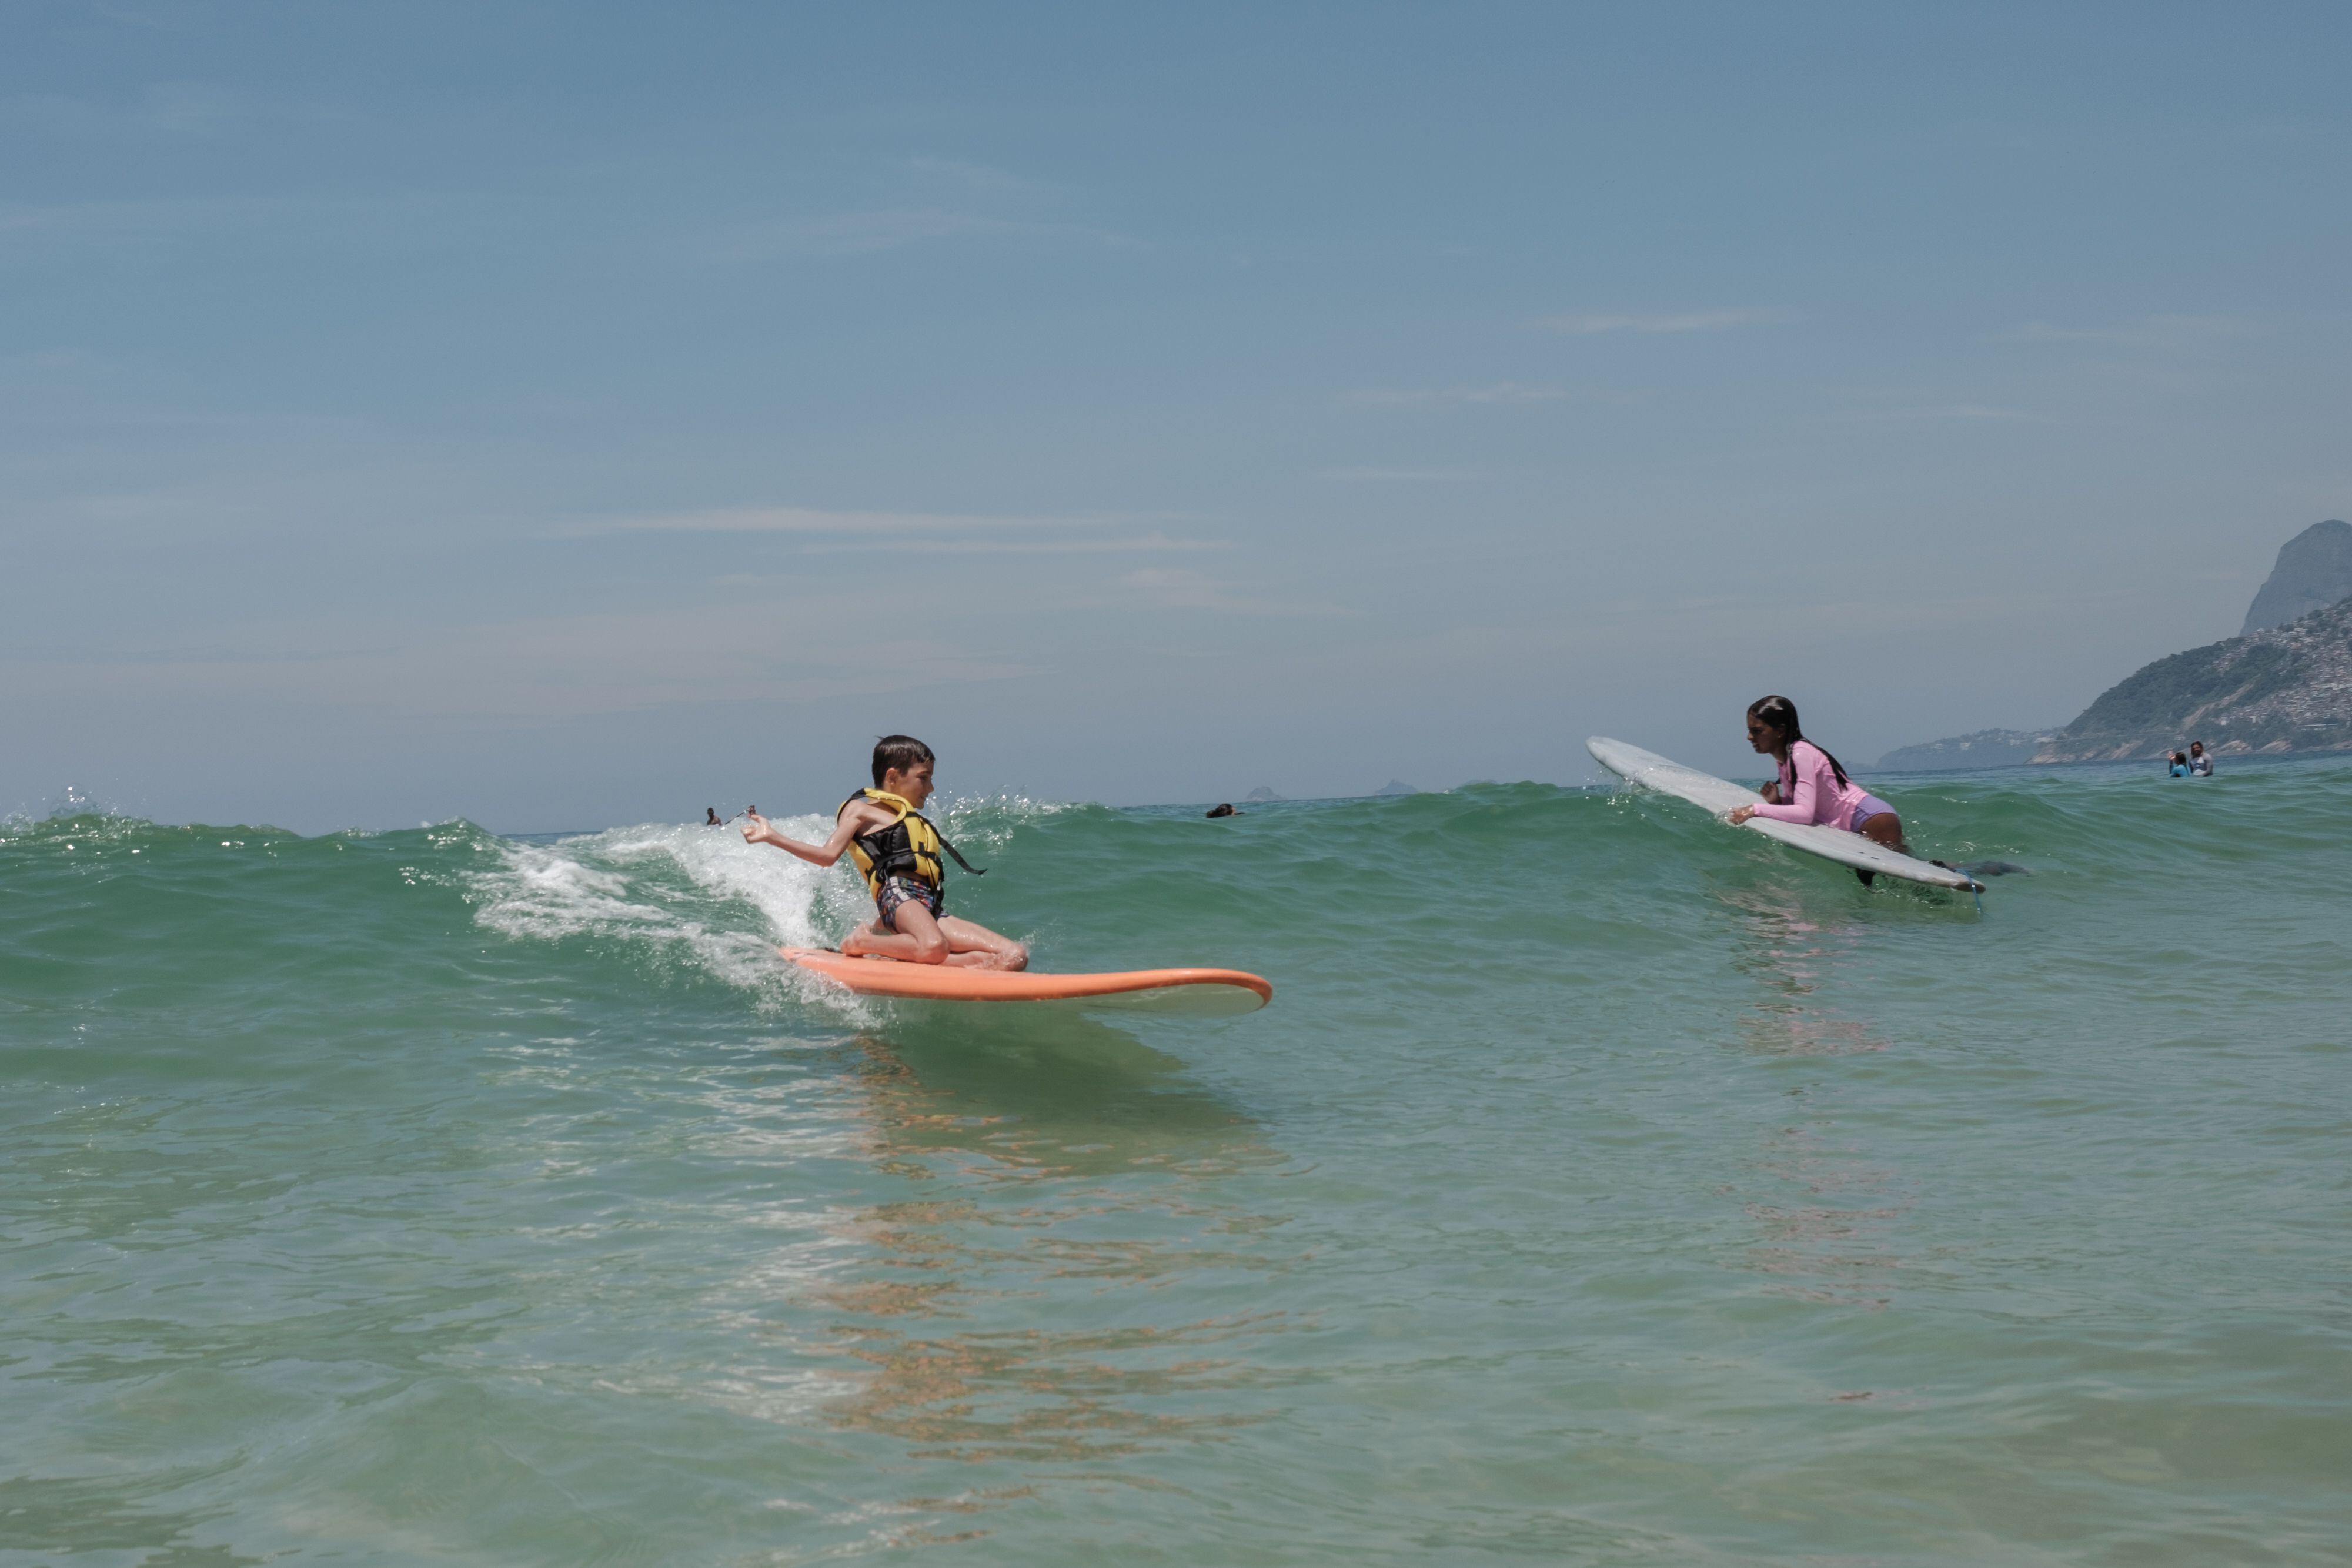 Luca, uno de los alumnos del proyecto Ondas Arpoador, surfea una ola durante una de las clases en la playa de Ipanema.